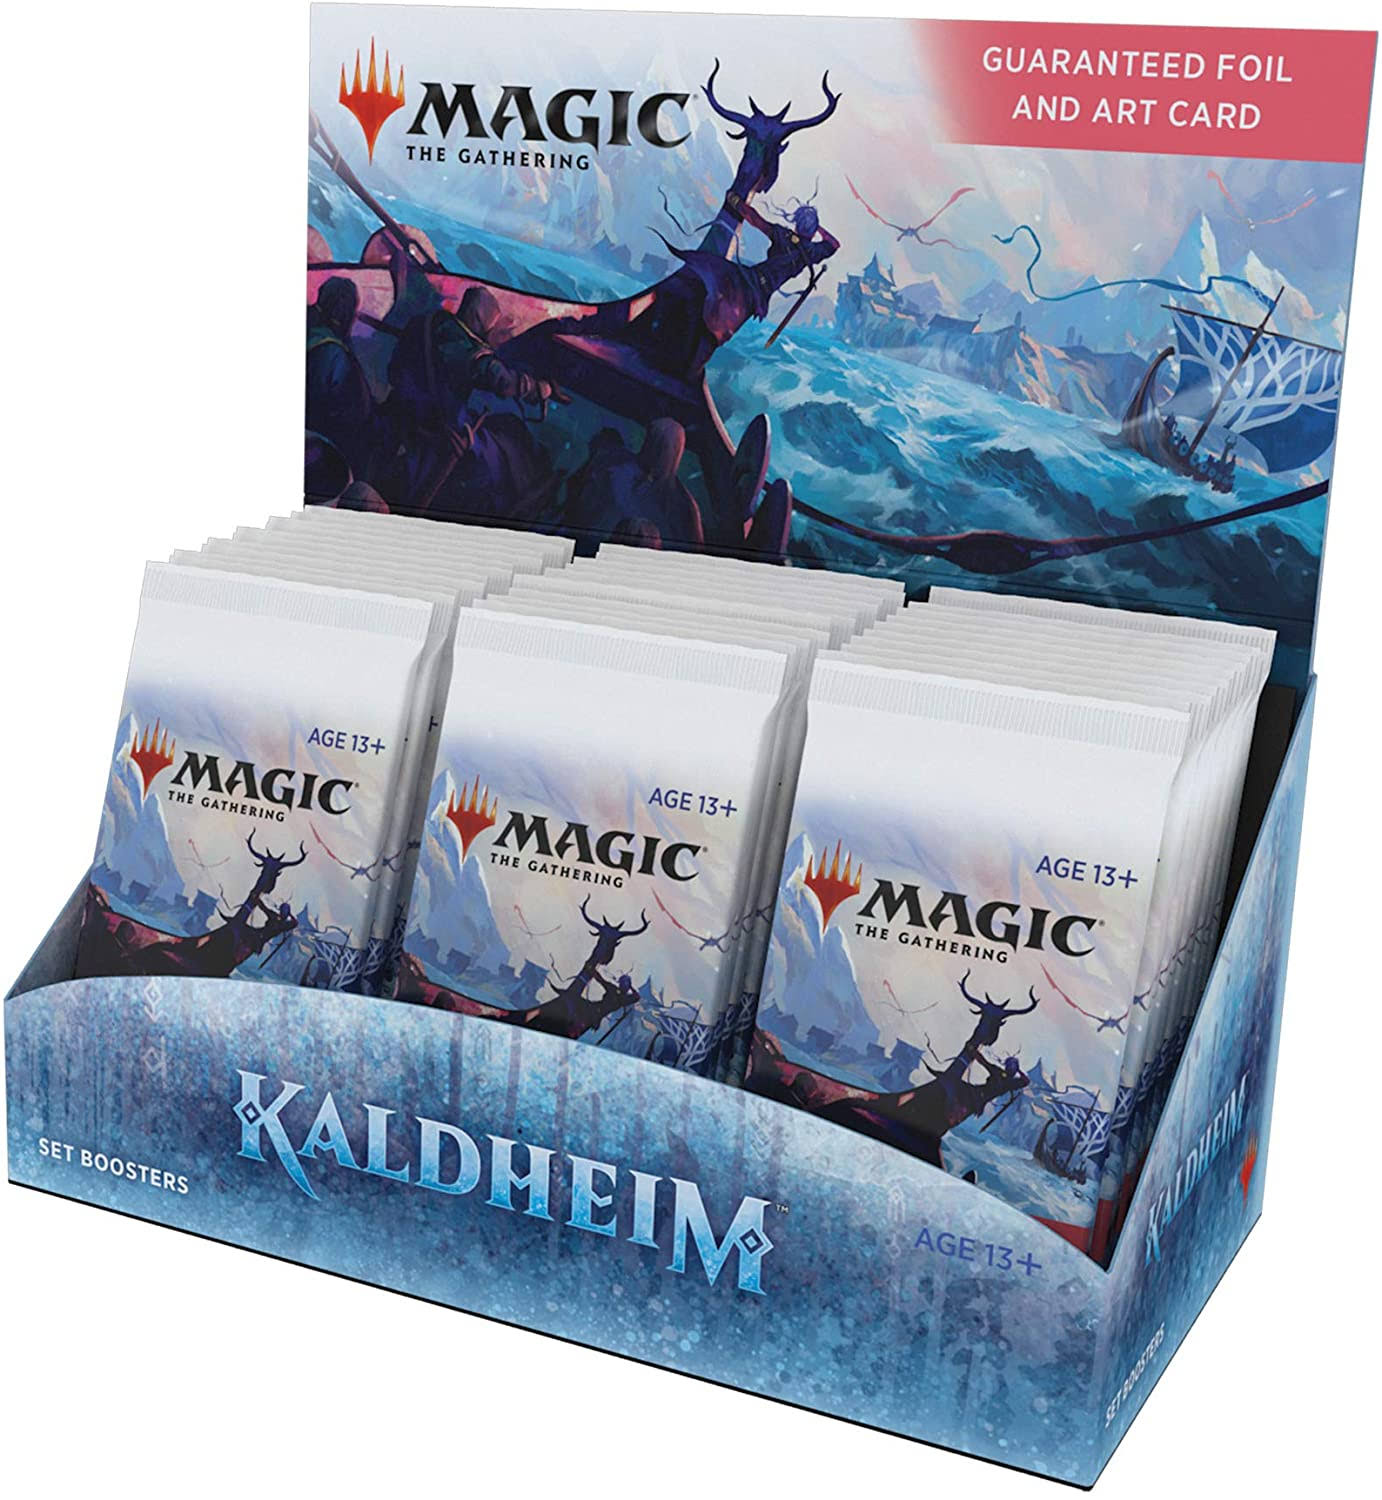 Magic The Gathering Kaldheim Set Booster Box